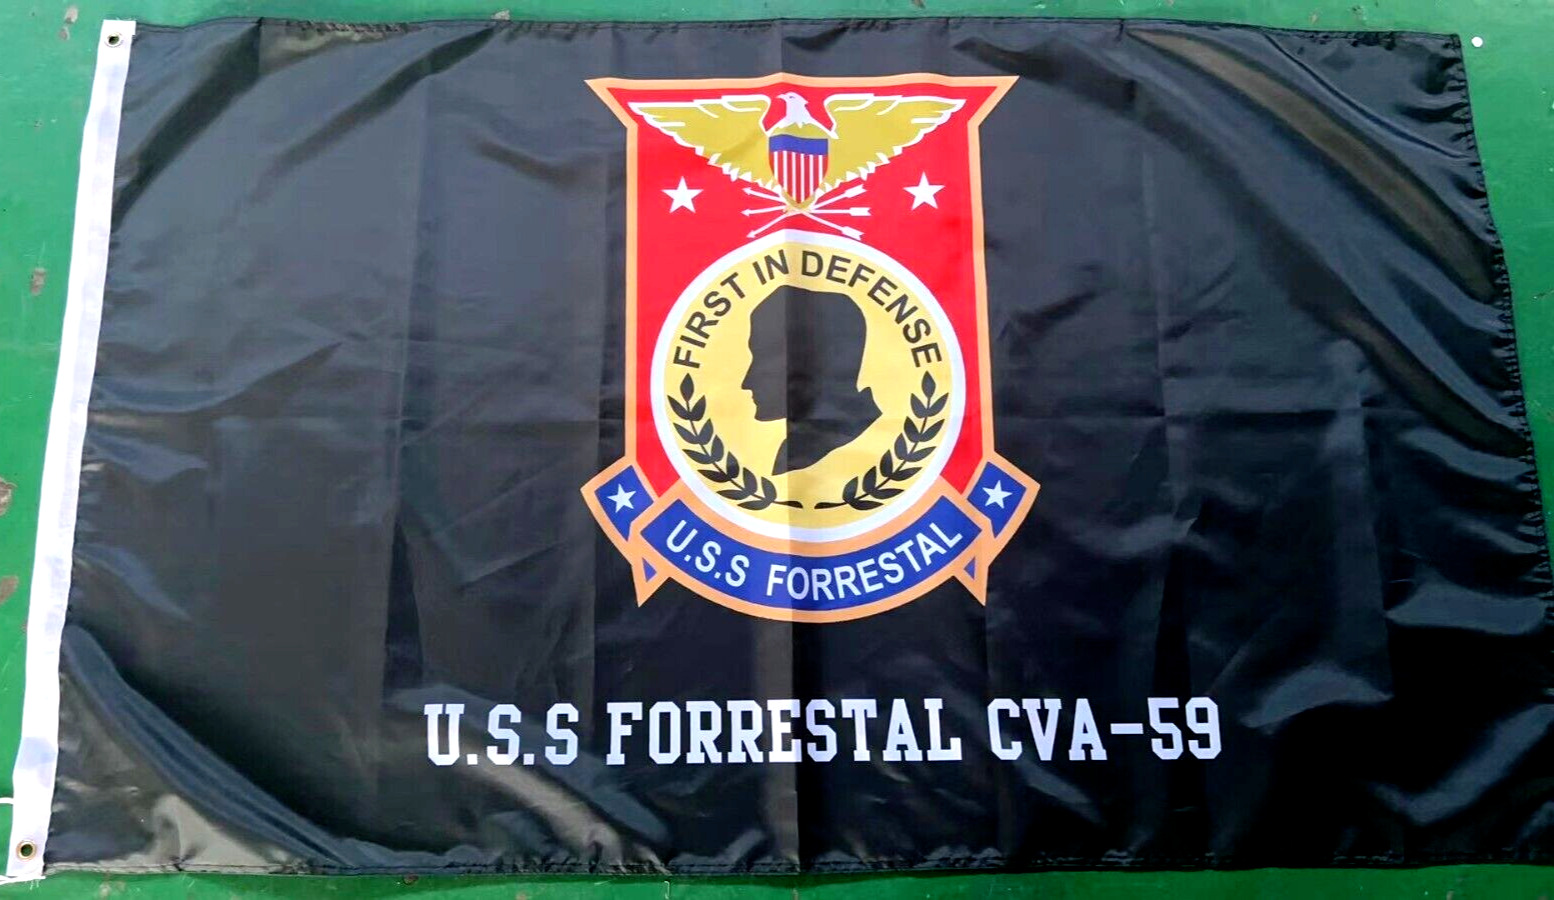 USN U.S.S Forrestal CVA-59 CV-59 AVT-59 3x5 ft Flag Banner